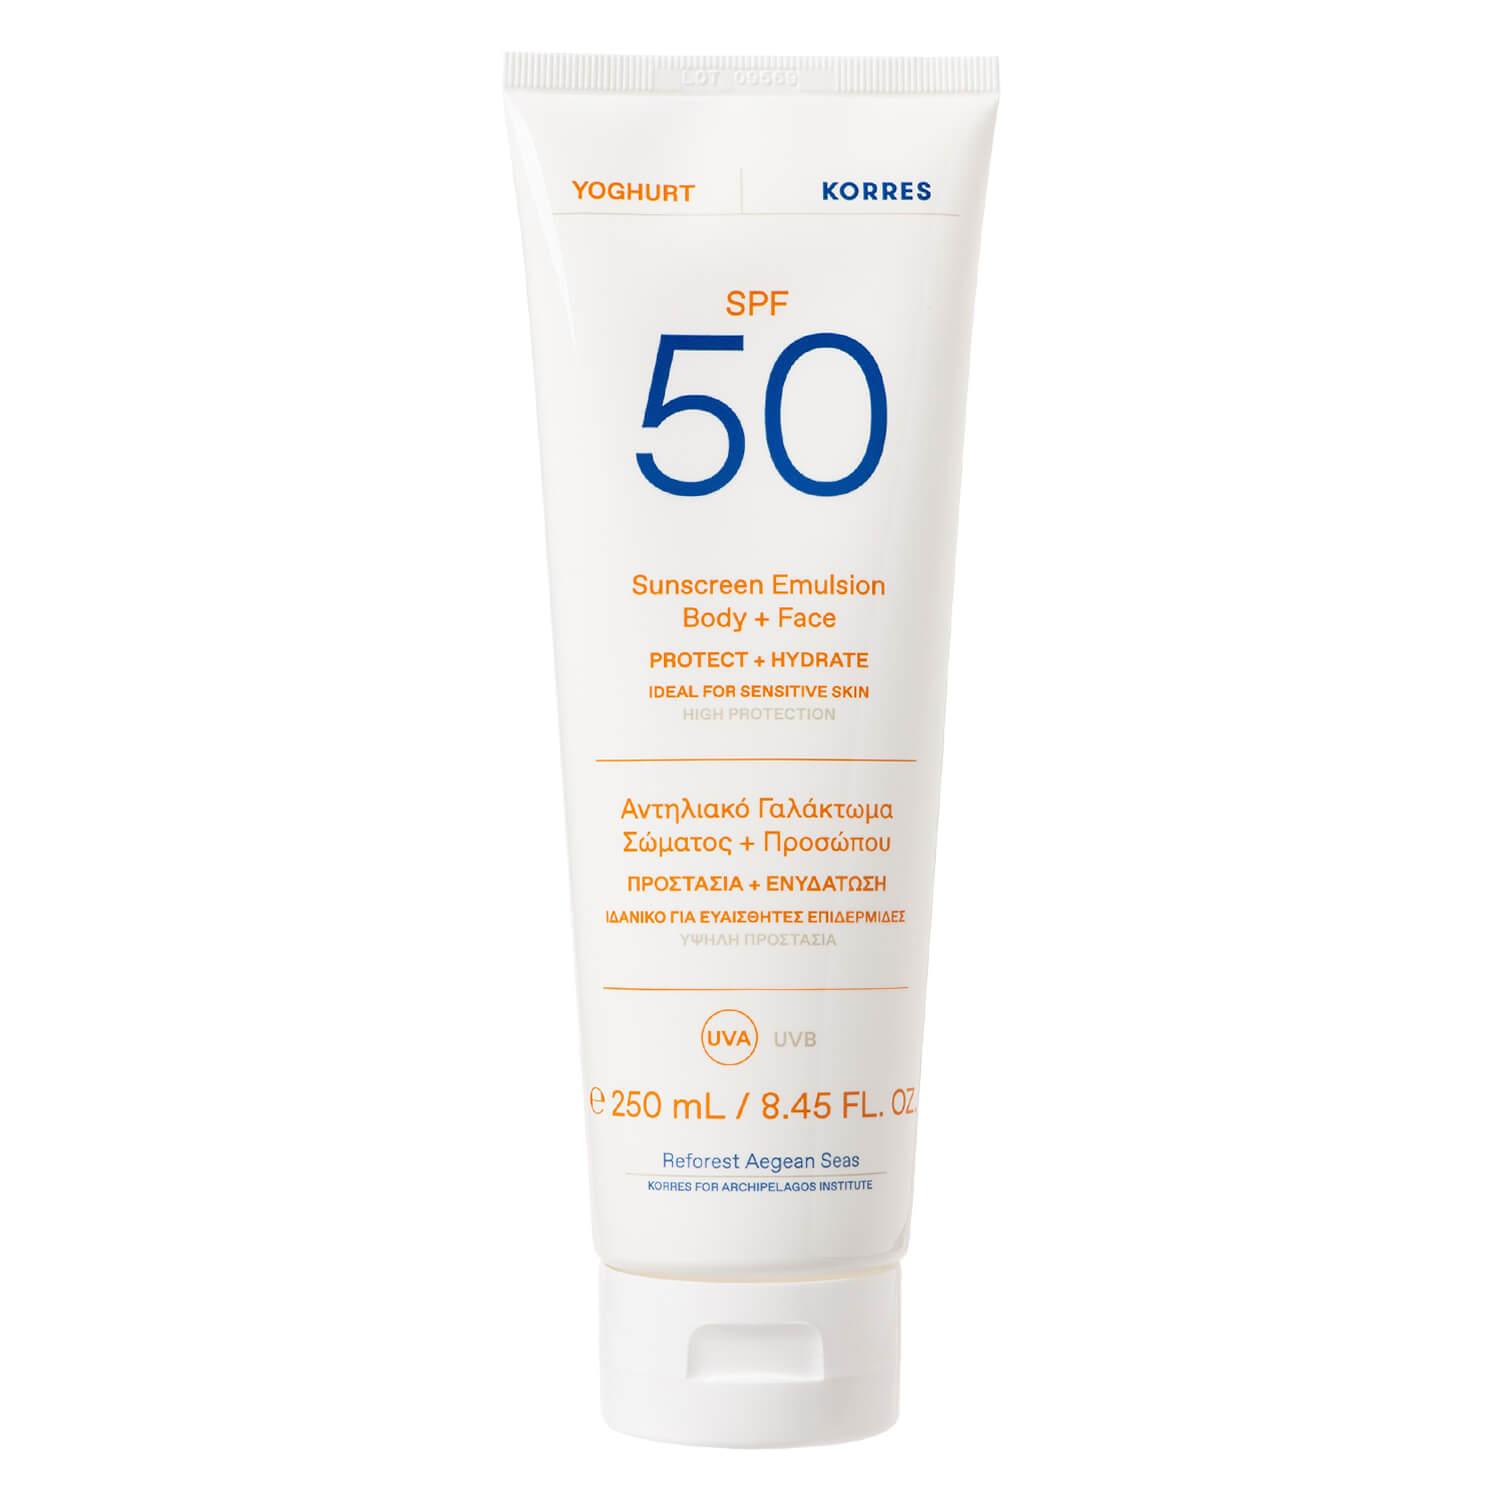 Korres Care - Yoghurt Sunscreen Emulsion Body + Face SPF50